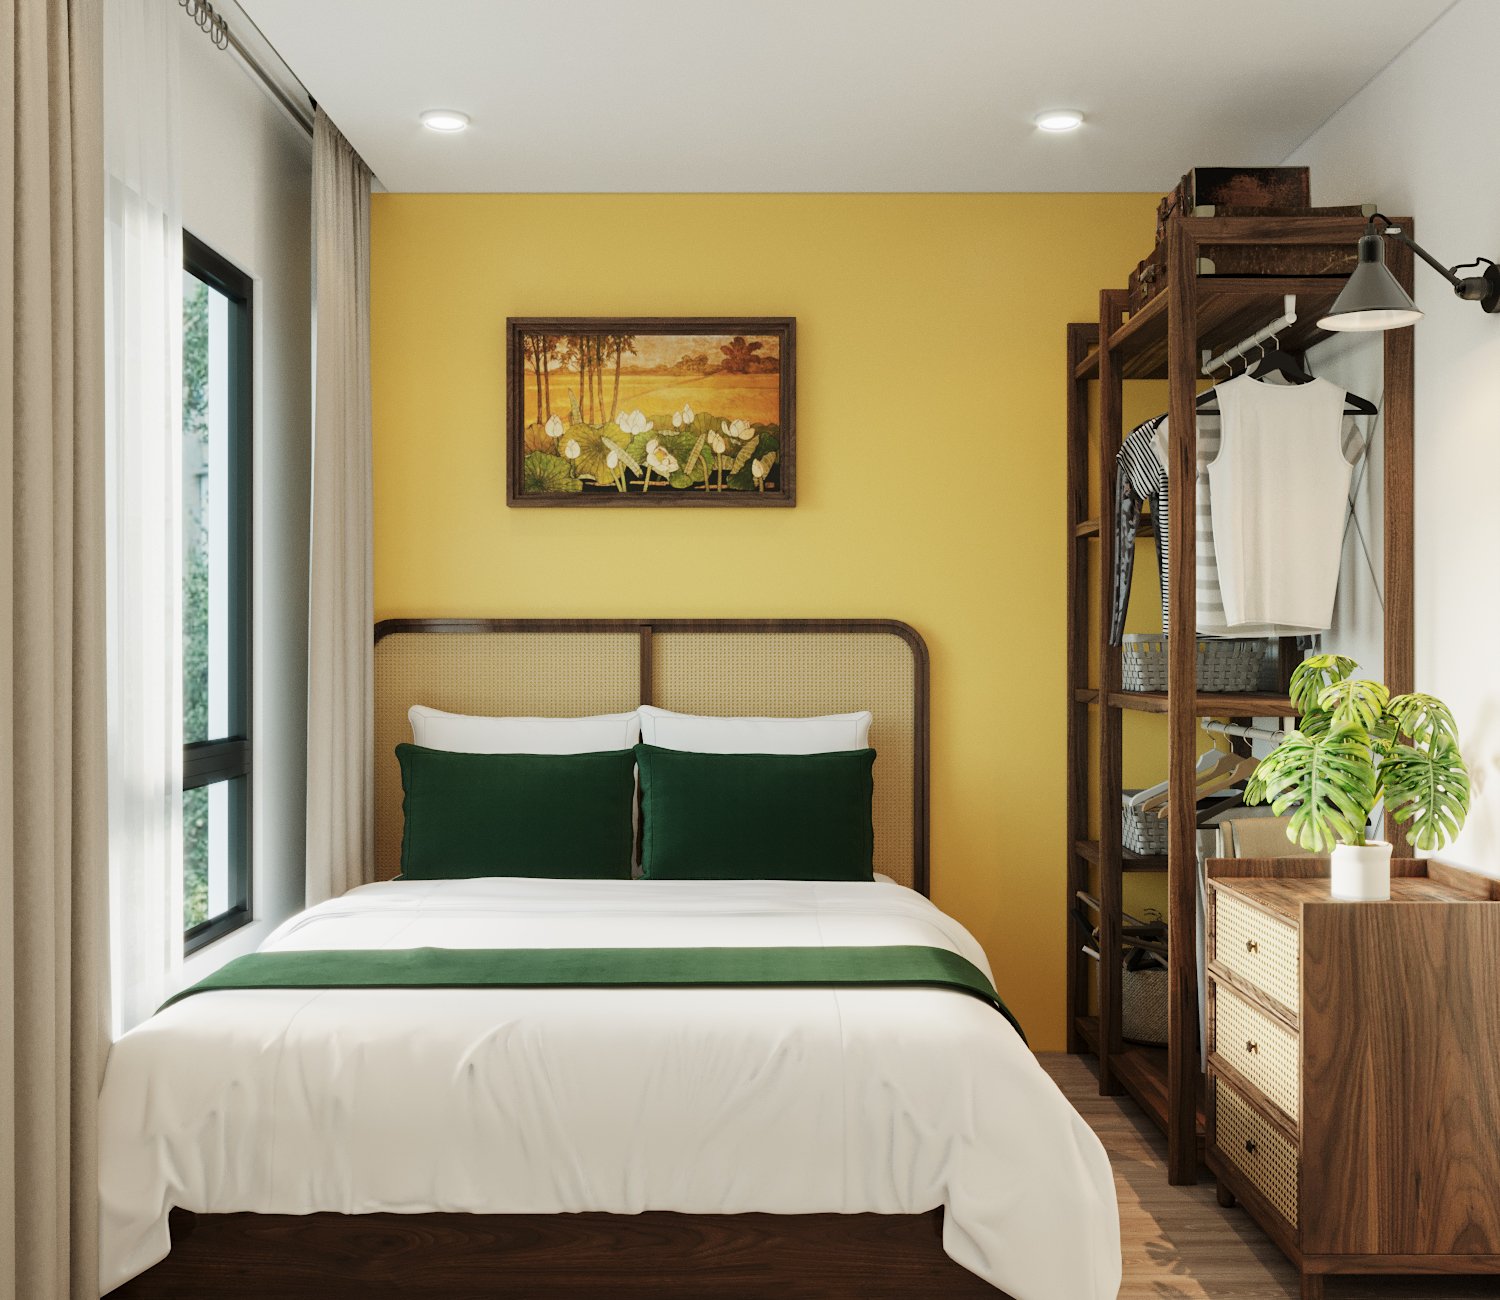 Các phòng ngủ được thiết kế với diện tích vừa phải, đủ để bố trí những món nội thất cơ bản như giường, tủ kệ lưu trữ. Mảng tường sơn màu vàng mù tạt làm ấm toàn bộ không gian.